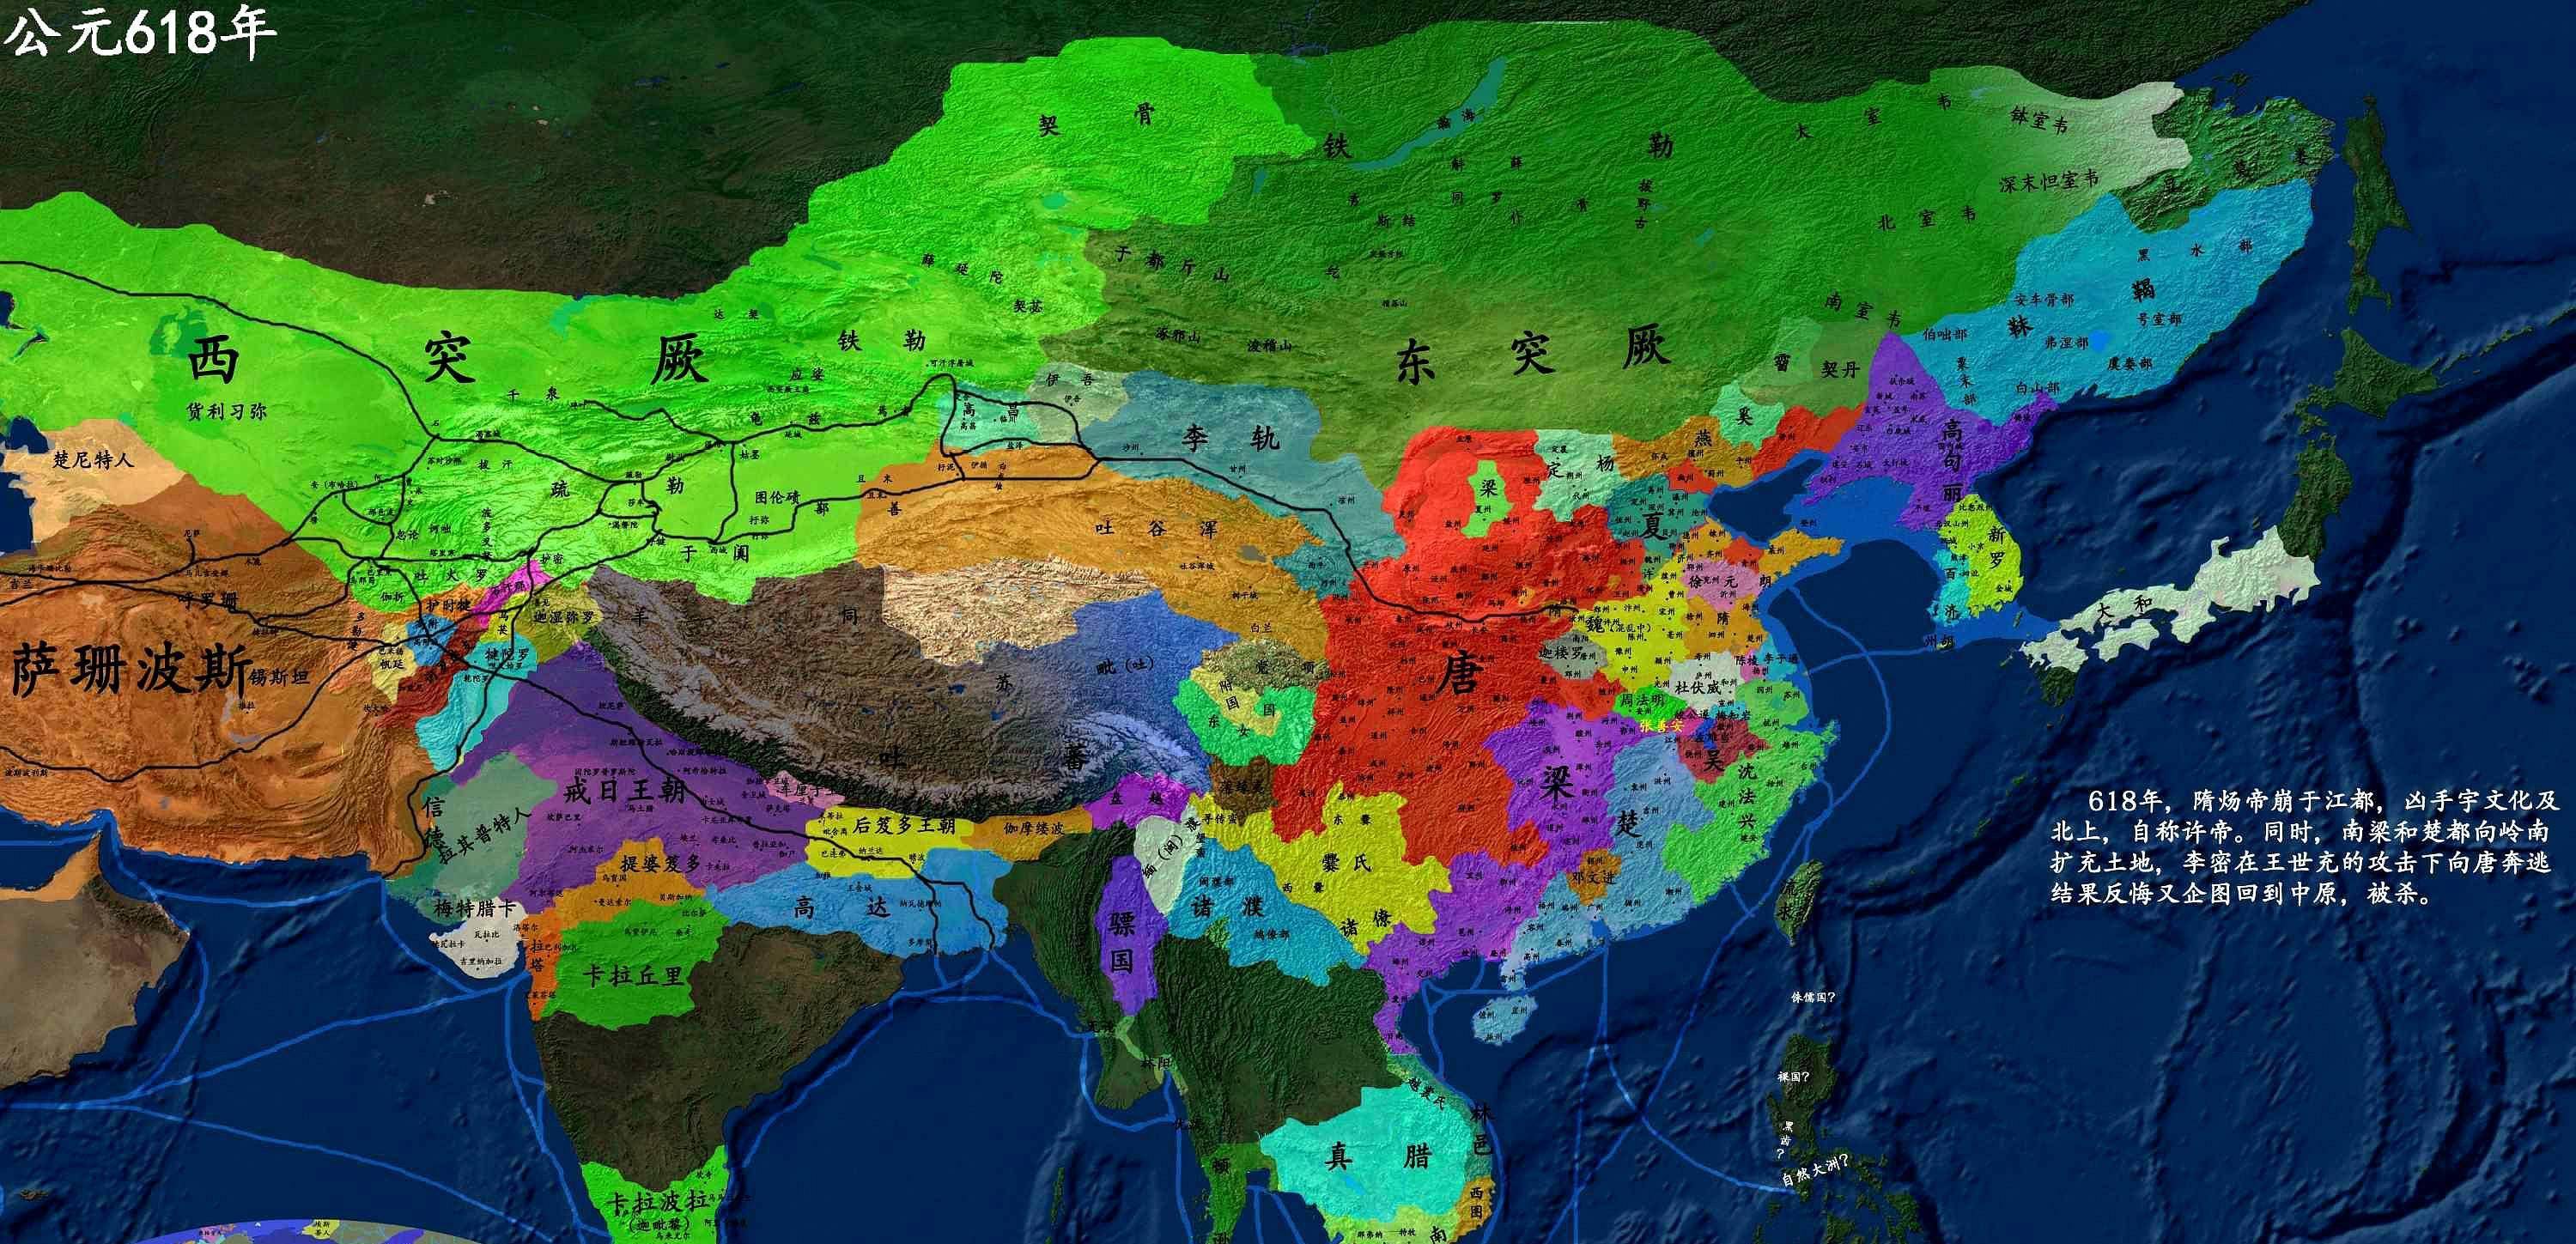 618年,李渊在长安称帝,当时中原地区还有很多割据势力,而大唐也只是